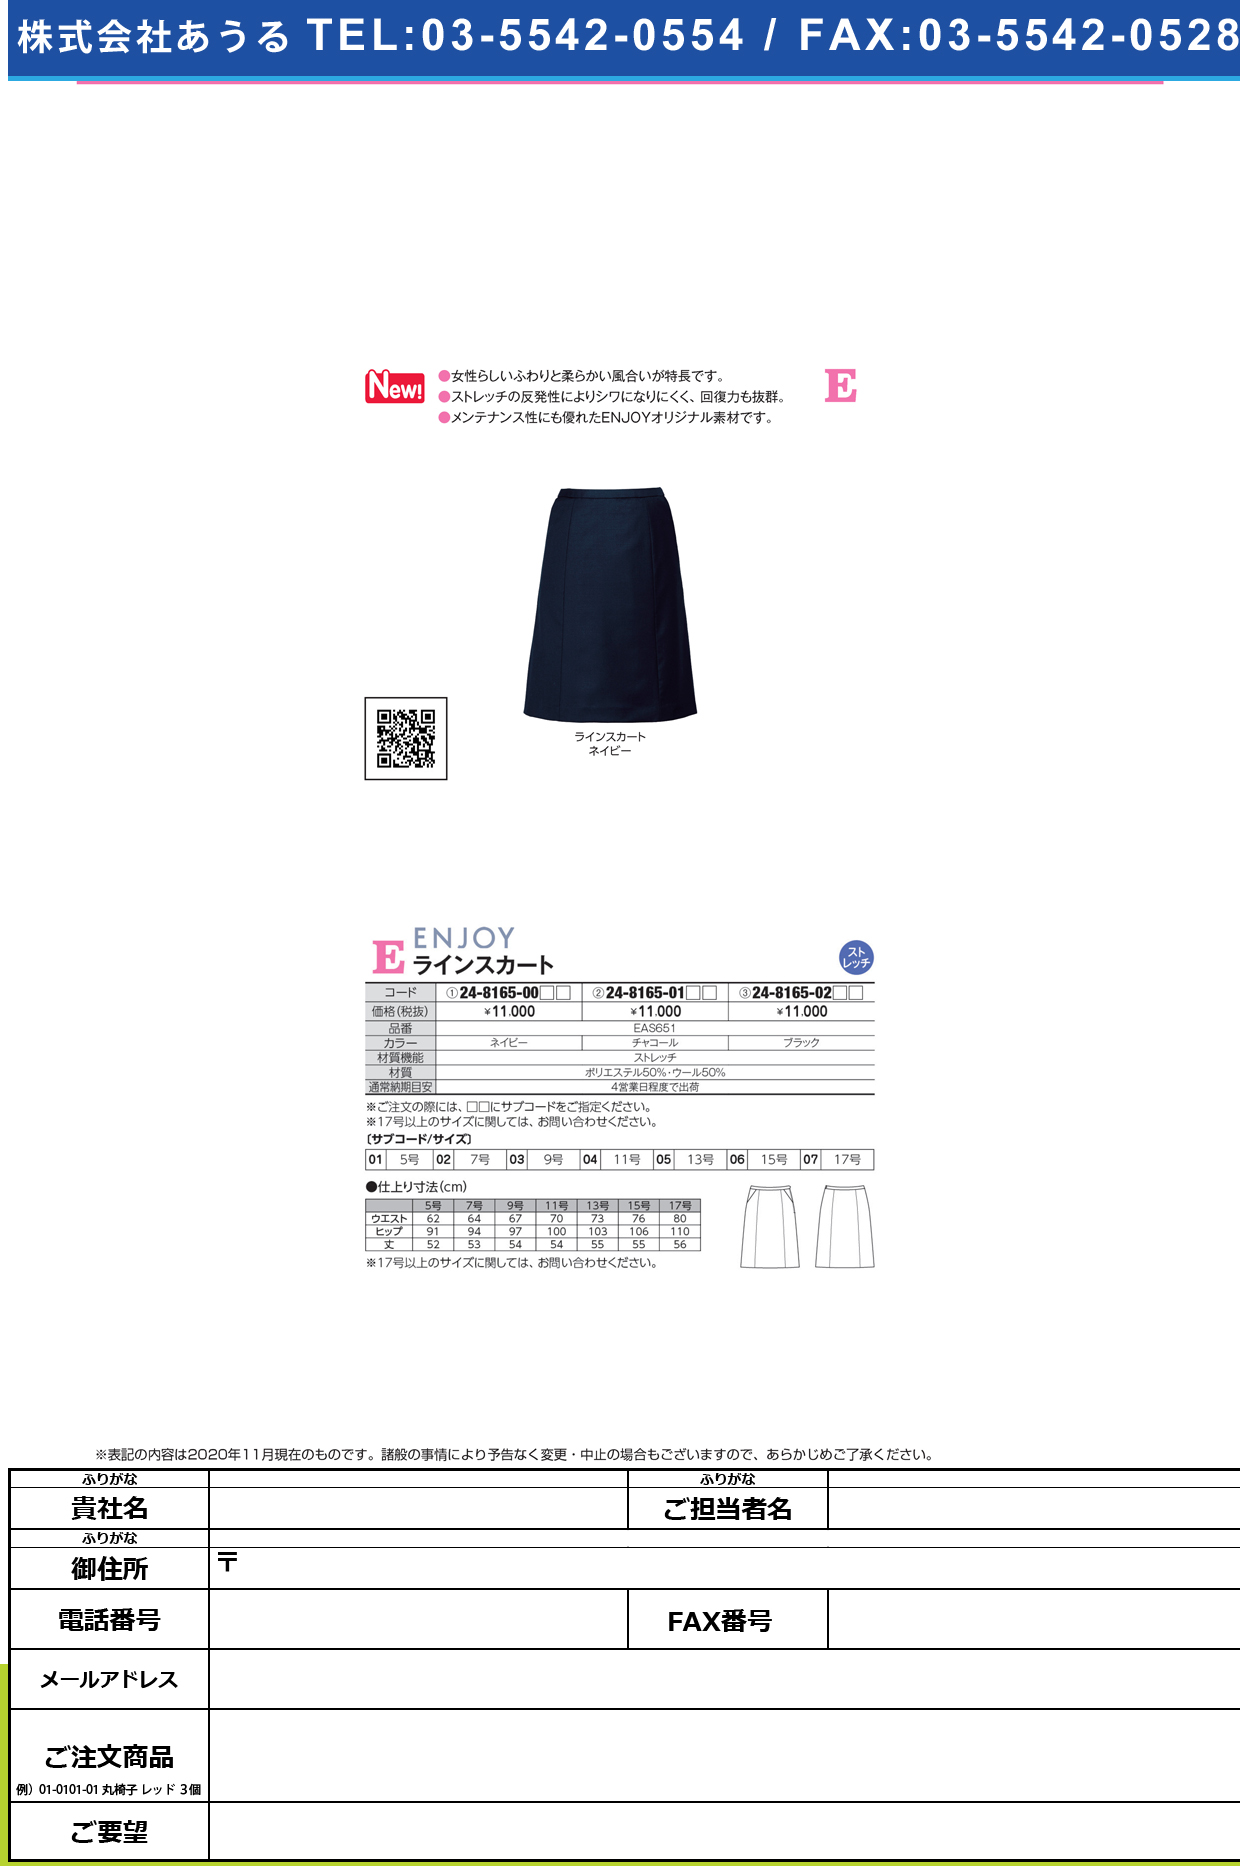 ラインスカート EAS651(ネイビー)EAS651(ﾈｲﾋﾞｰ)７号(24-8165-00-02)【カーシーカシマ】(販売単位:1)